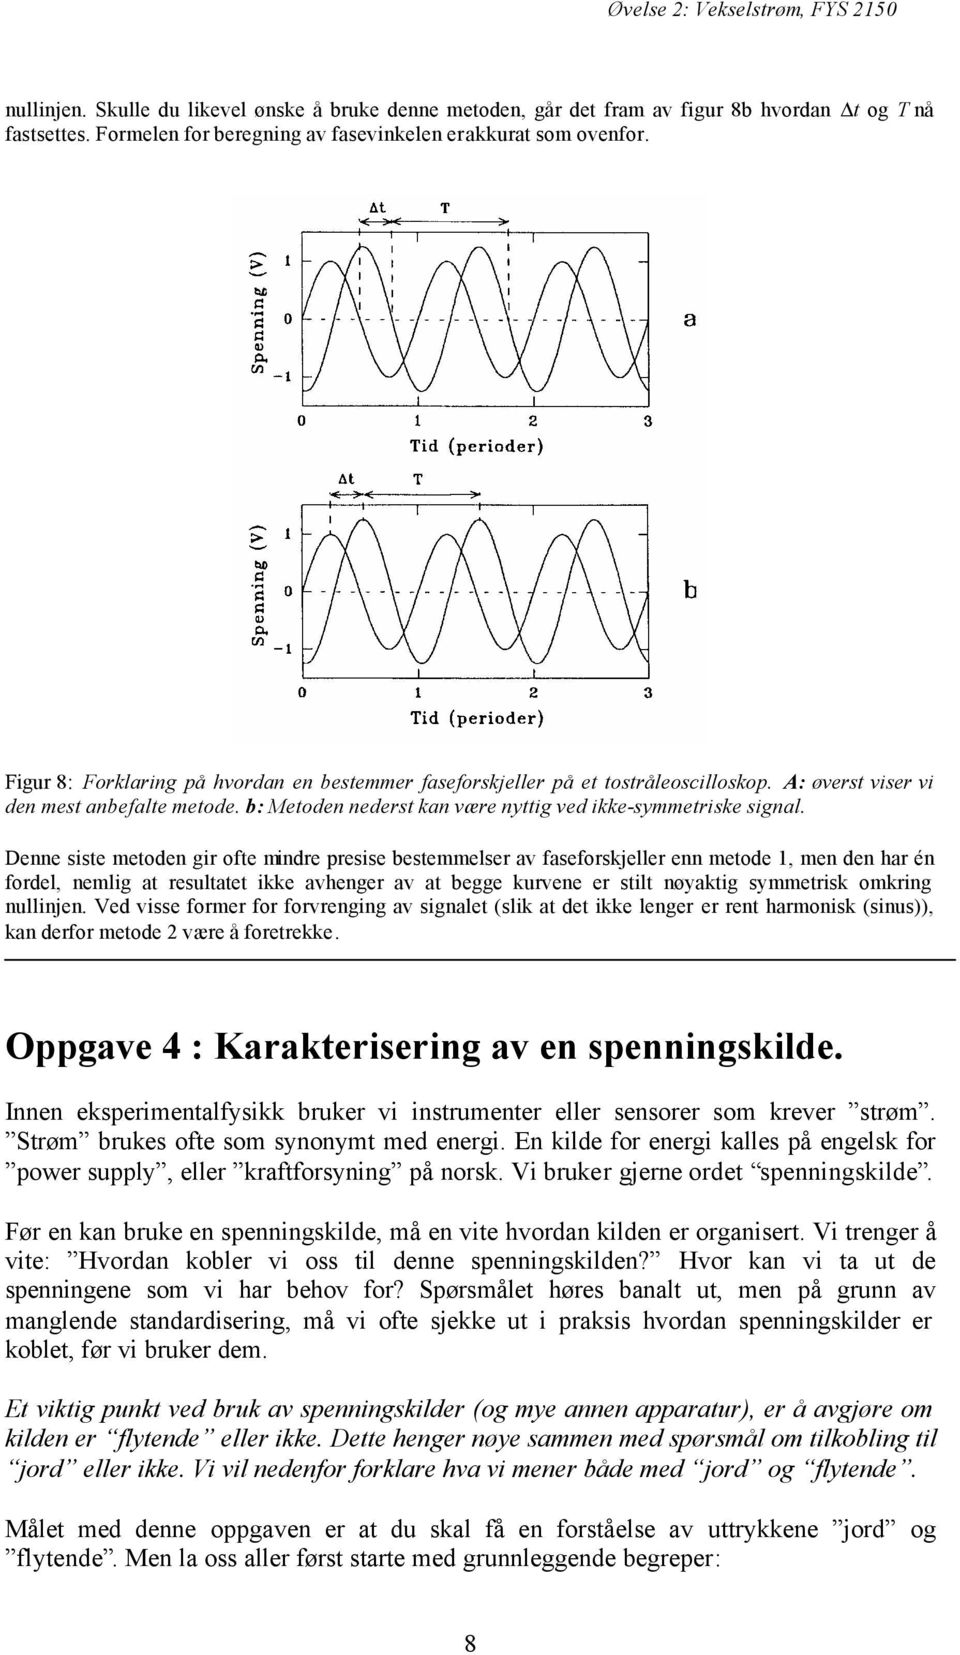 b: Metoden nederst kan være nyttig ved ikke-symmetriske signal.